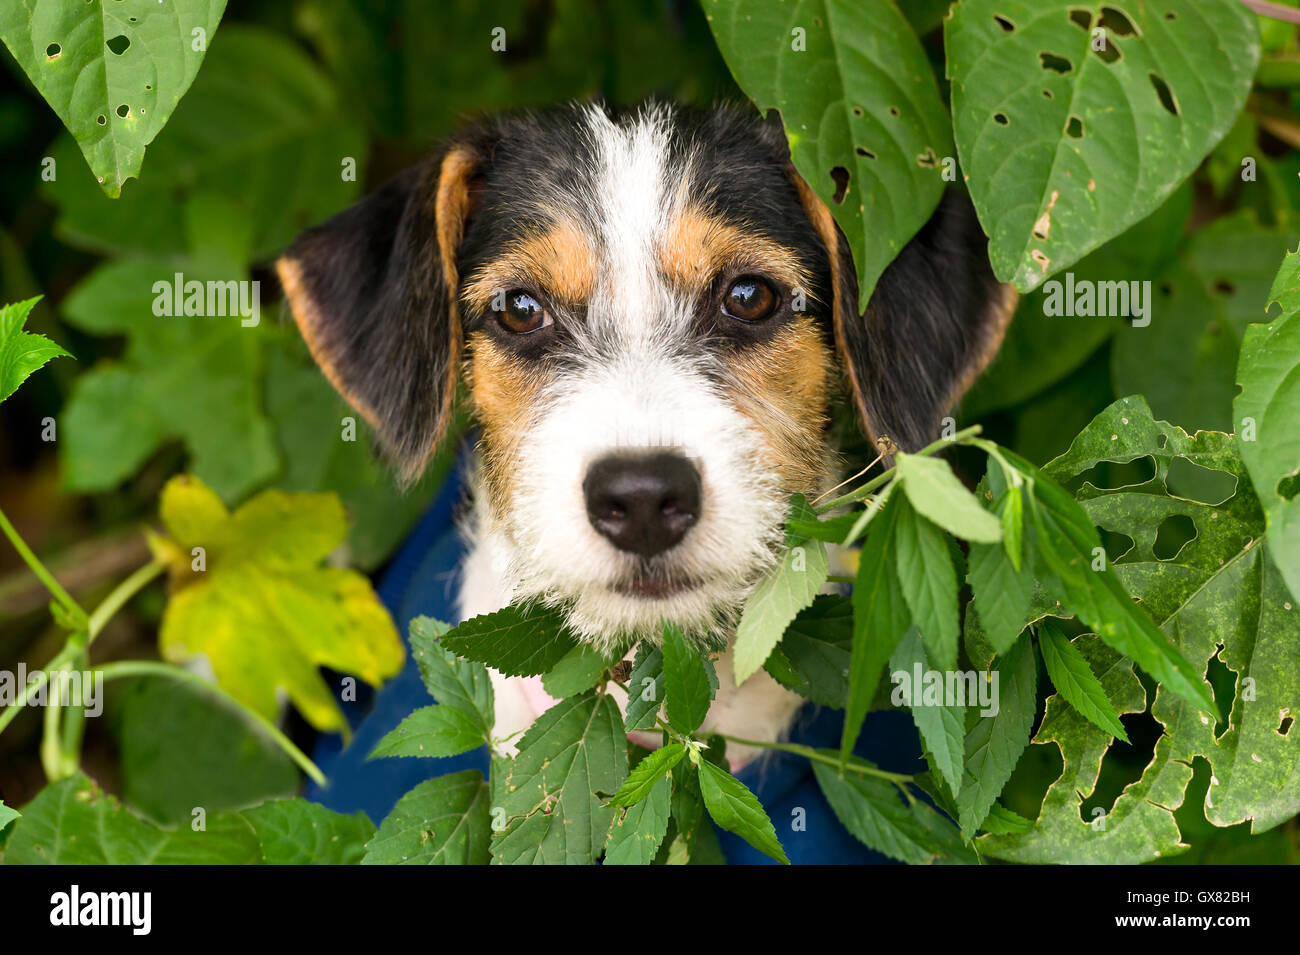 Puppy est un adorable petit chien face à l'extérieur avec de grands yeux marron adorable. Banque D'Images